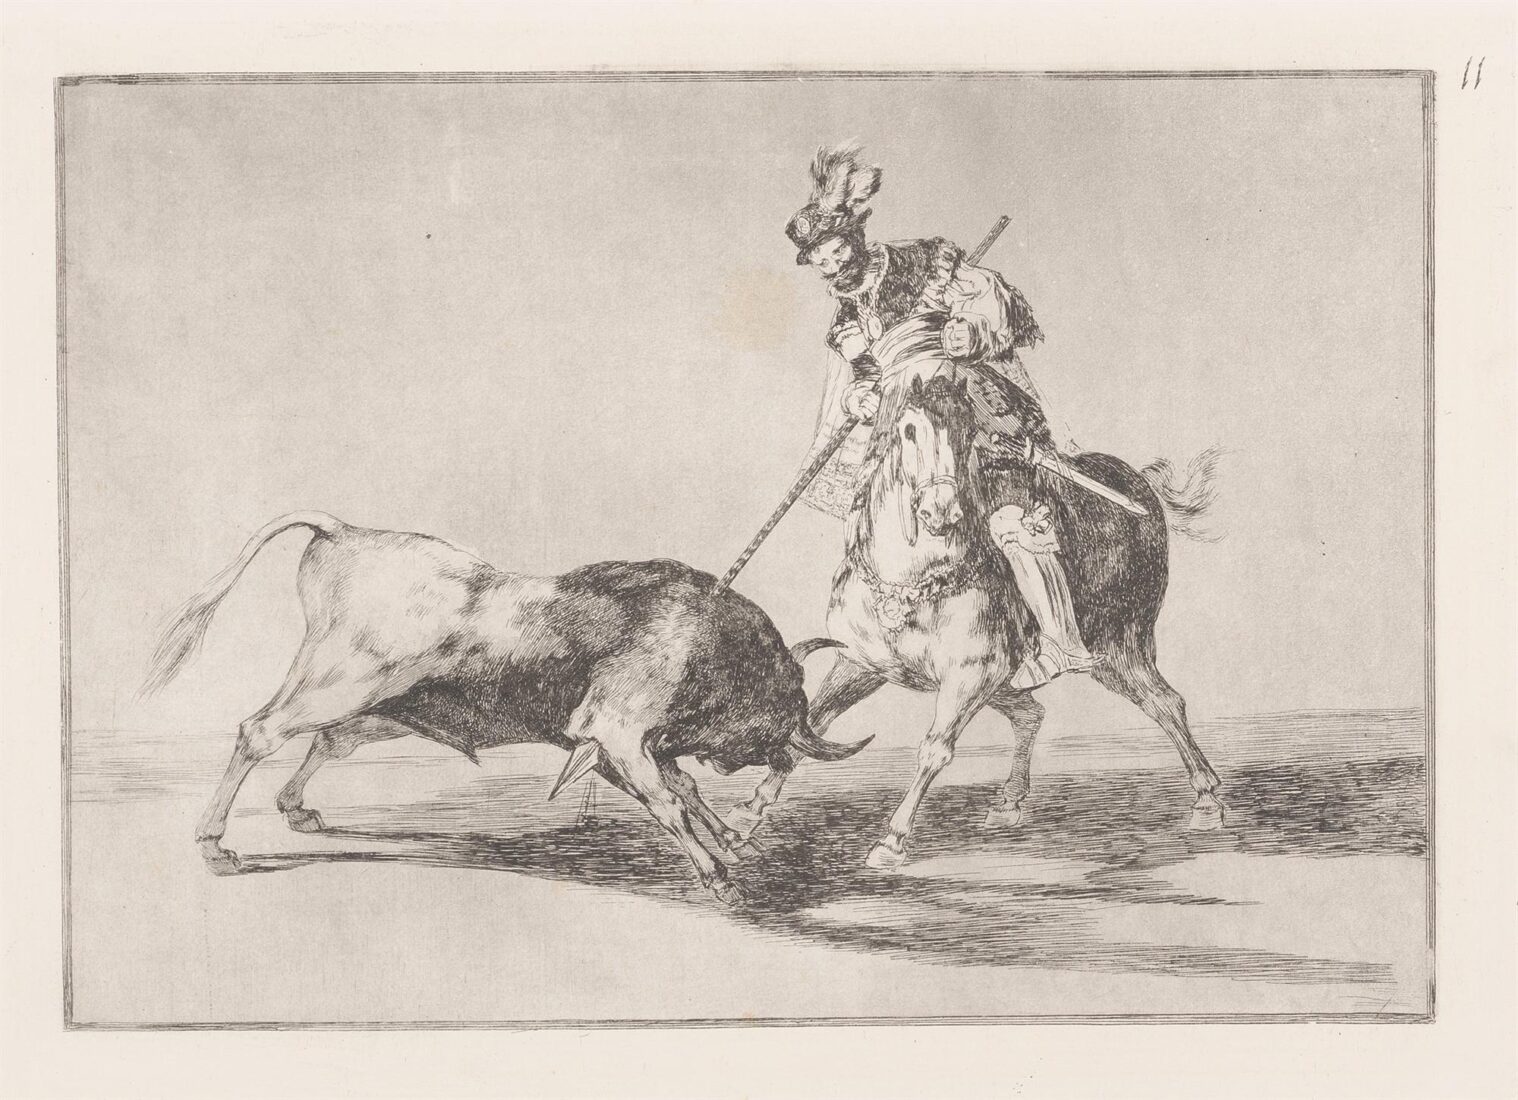 The Cid Campeador spearing another bull. (El Cid Campeador lanceando otro toro) - Goya y Lucientes Francisco